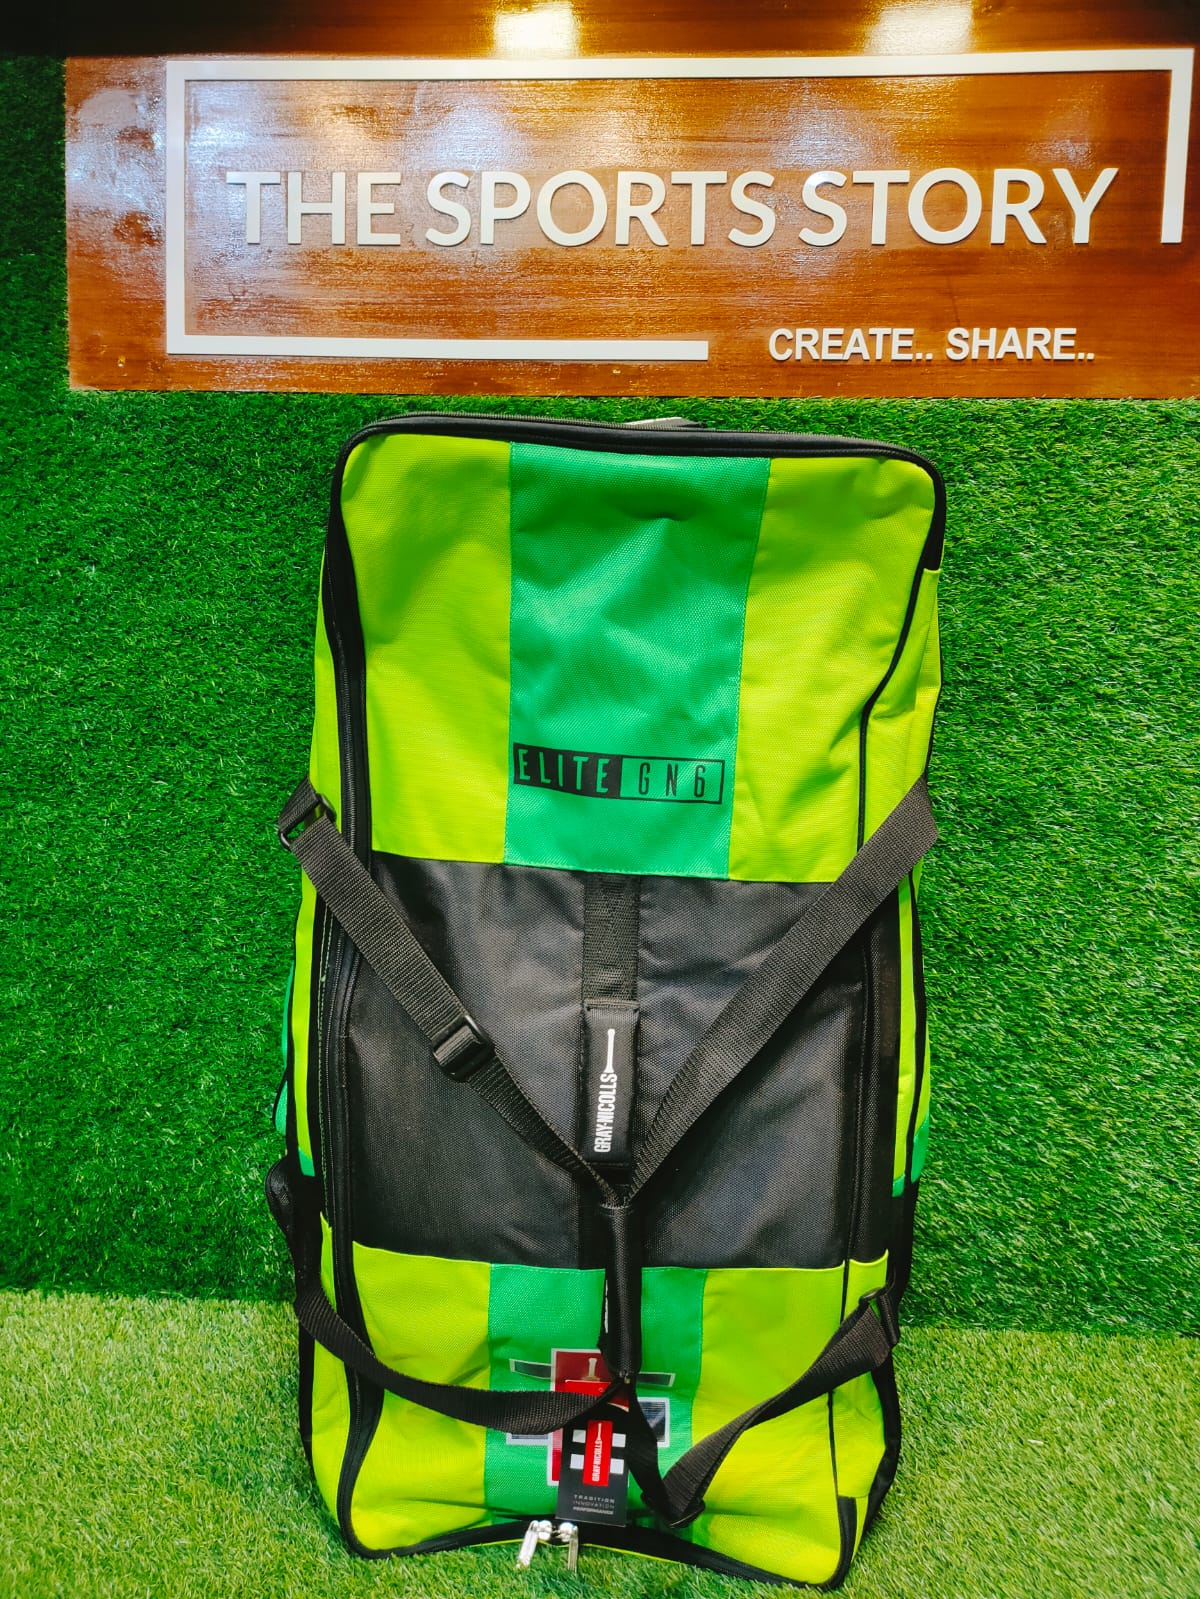 Cricket Kit Bag - GN - BAG WHEELIE GN6 ELITE